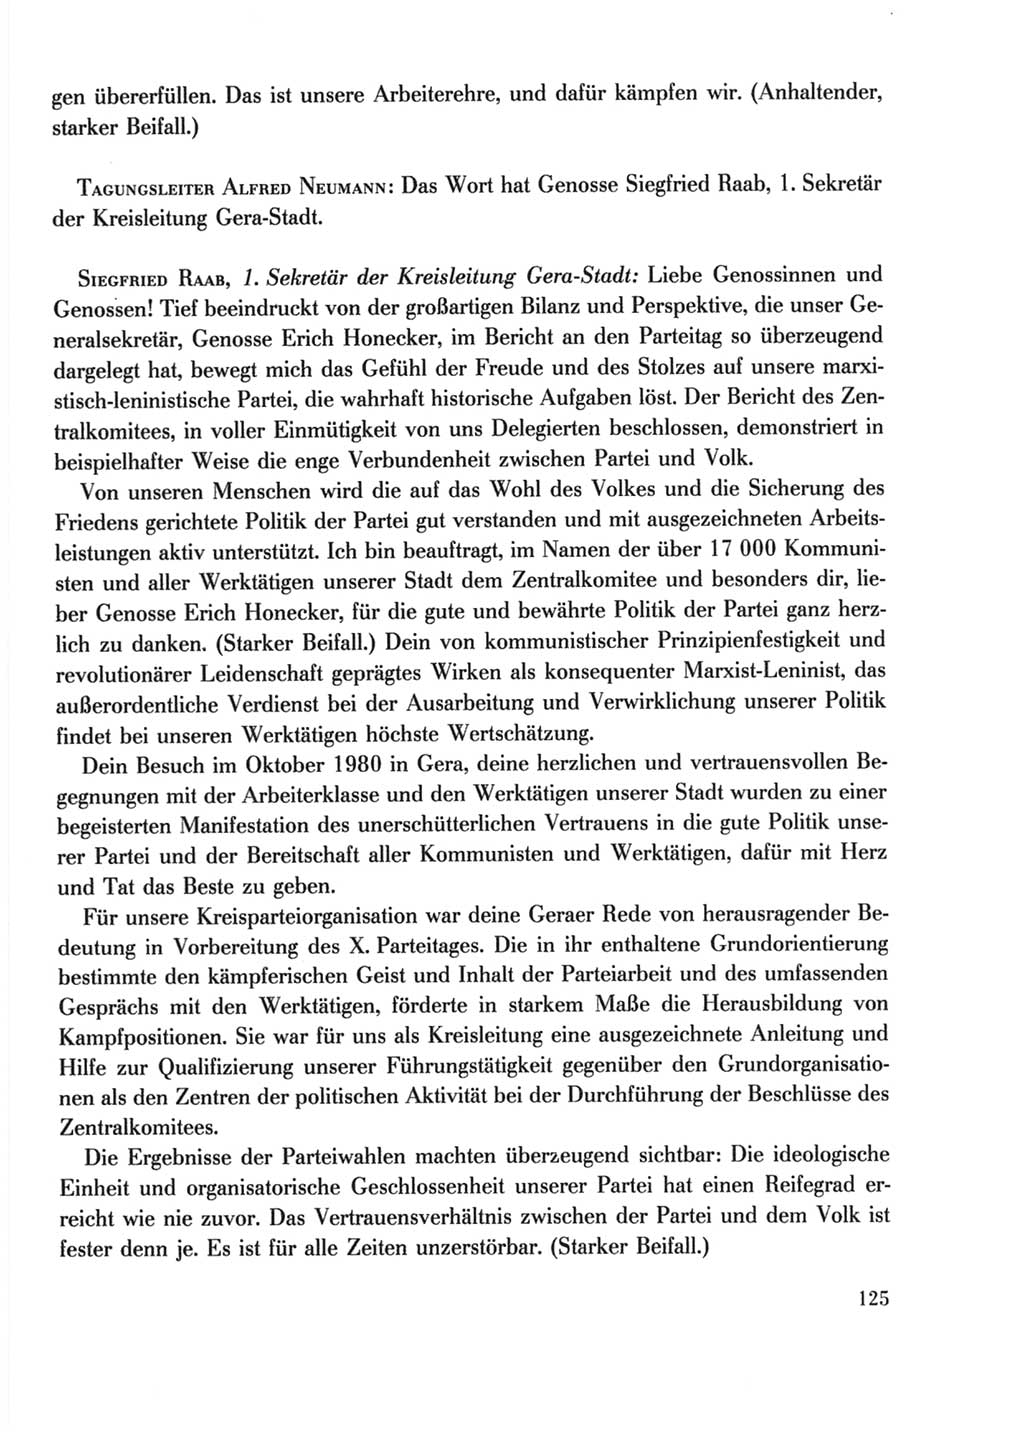 Protokoll der Verhandlungen des Ⅹ. Parteitages der Sozialistischen Einheitspartei Deutschlands (SED) [Deutsche Demokratische Republik (DDR)] 1981, Band 2, Seite 125 (Prot. Verh. Ⅹ. PT SED DDR 1981, Bd. 2, S. 125)